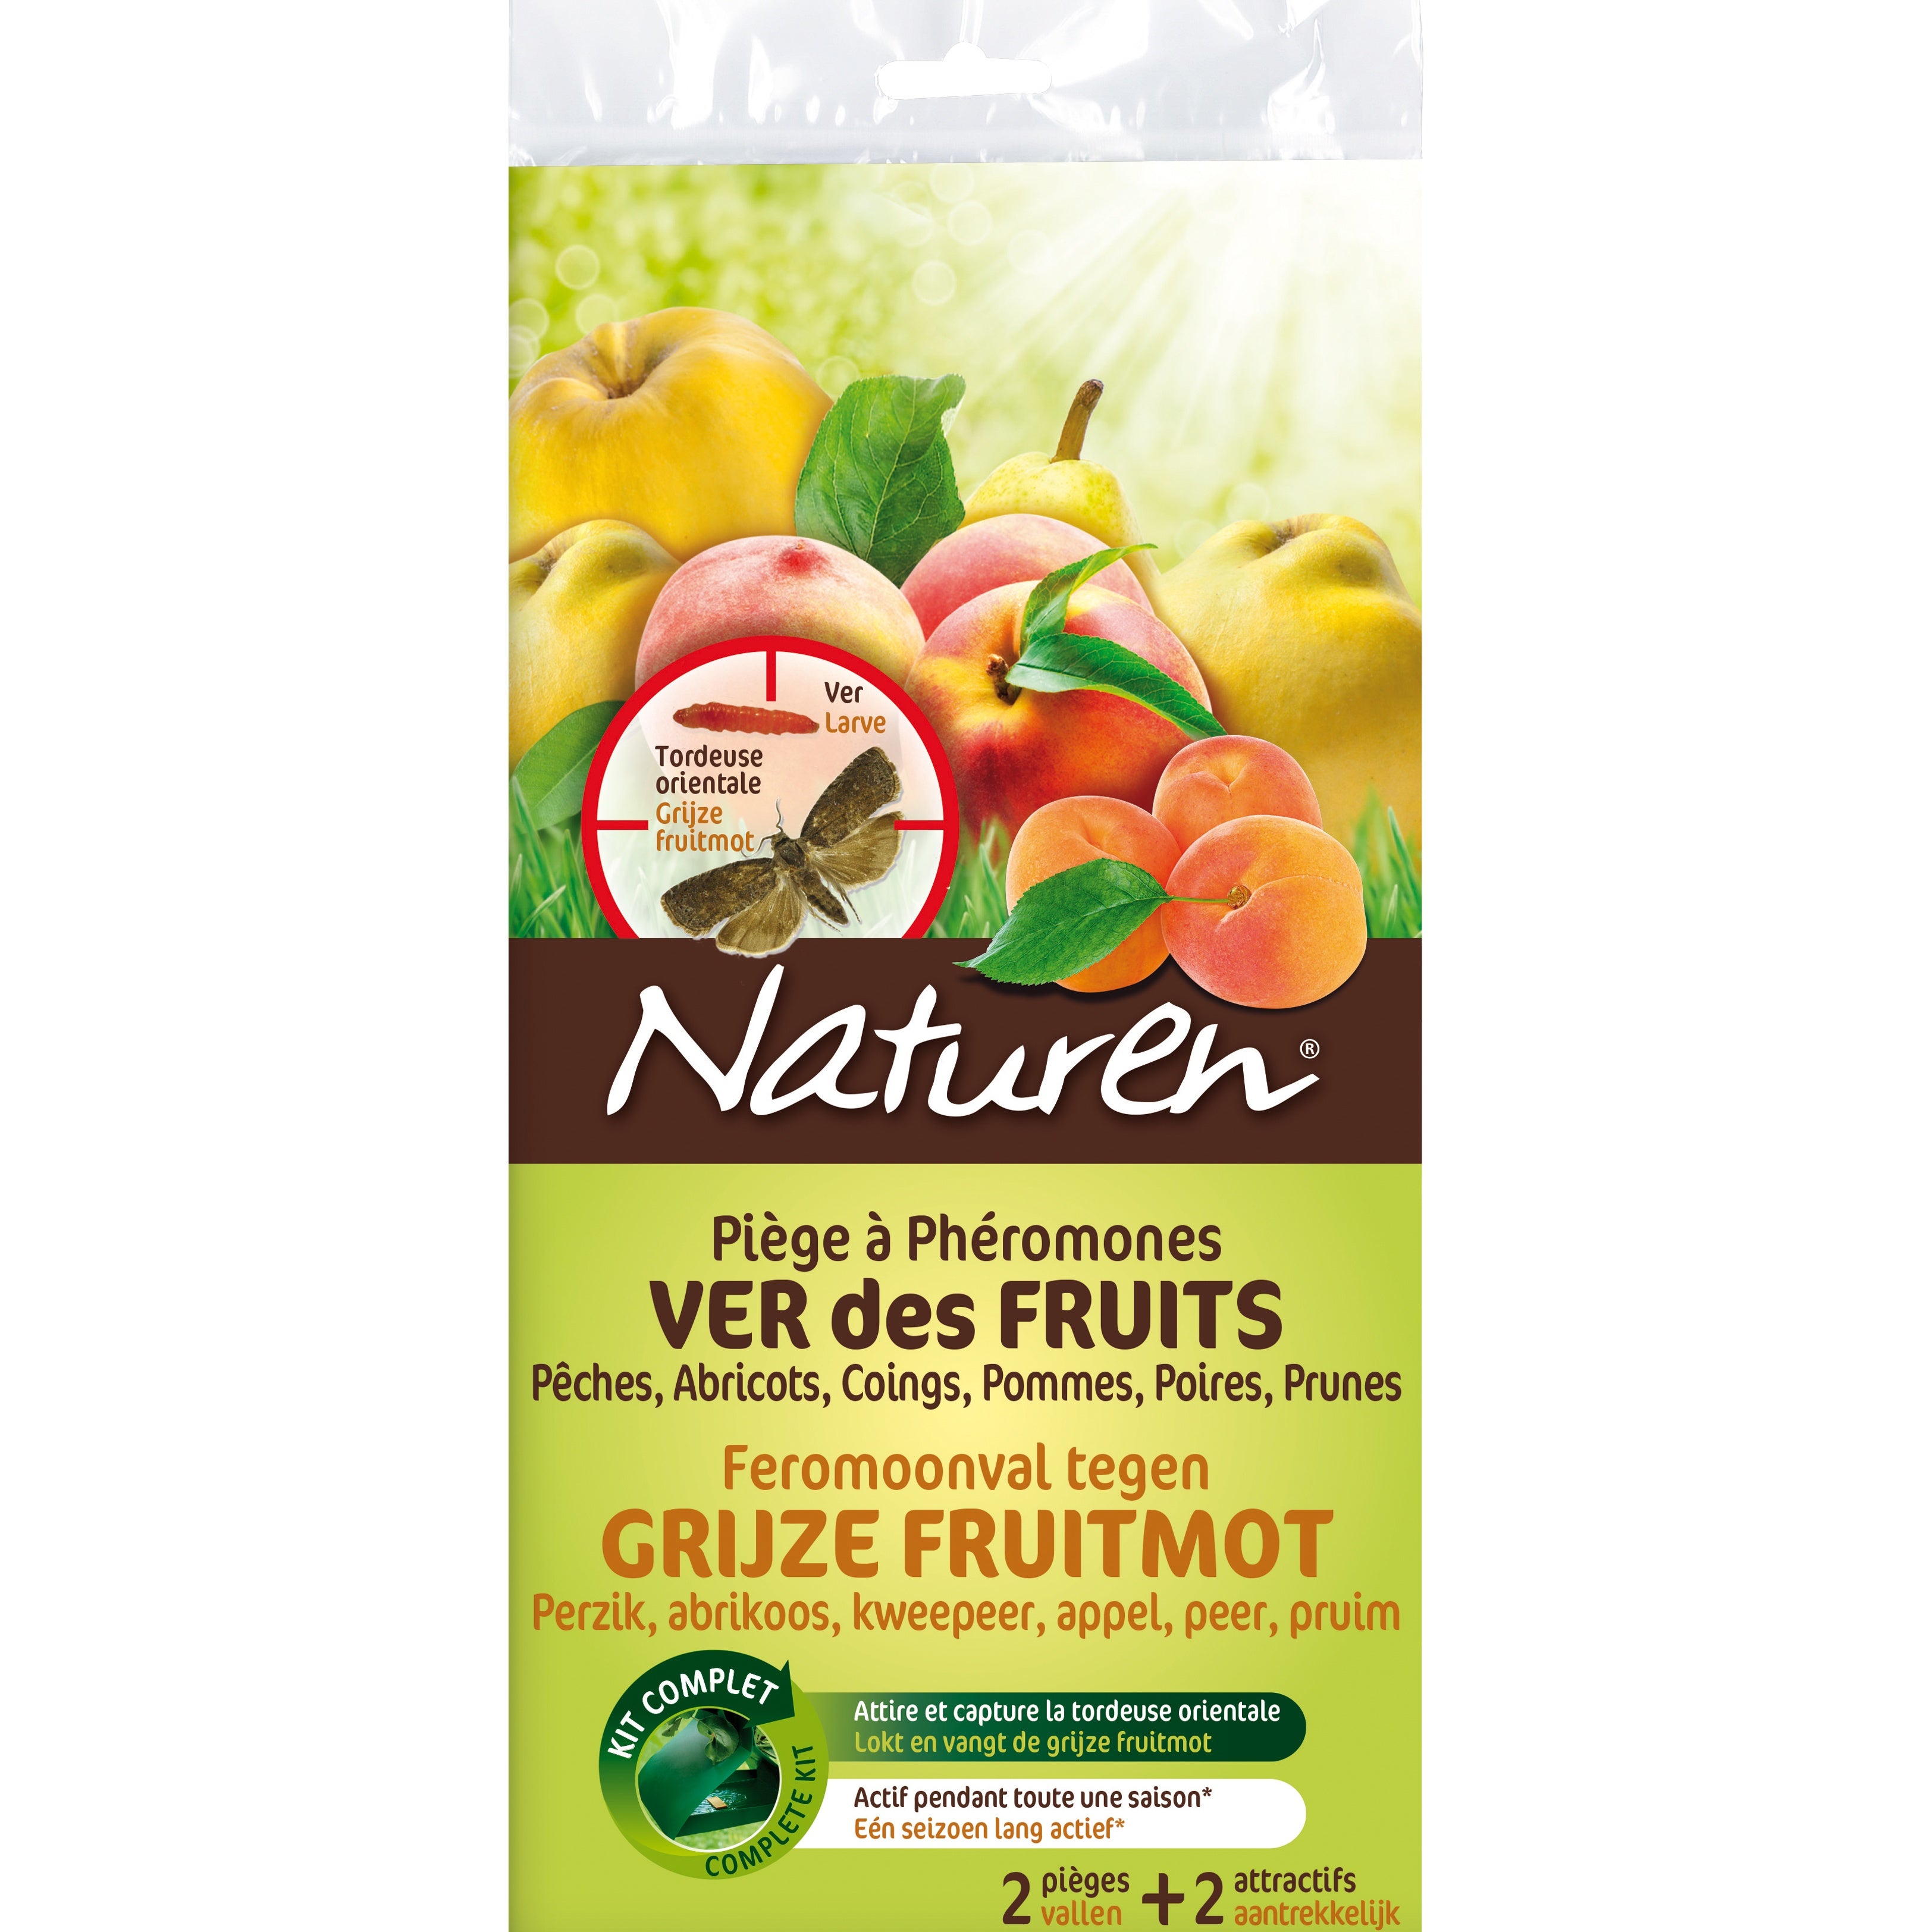 Pièges à phéromones - Ver des fruits NATUREN